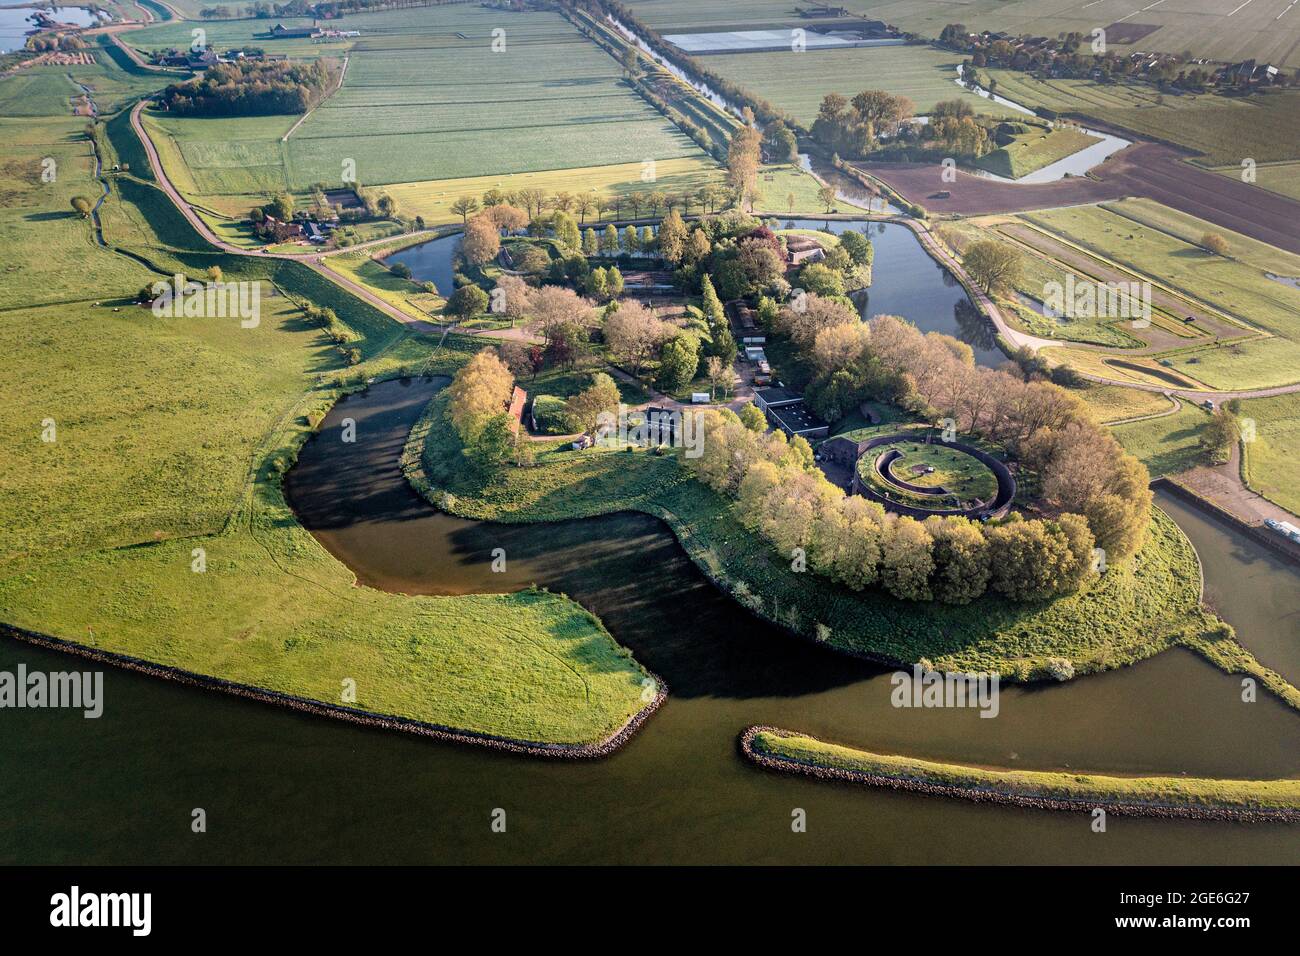 Niederlande, Schalkwijk, Fort Honswijk, Teil der Neuen Niederländischen Wasserlinie. UNESCO-Weltkulturerbe. Niederländische Wasserschutzlinien. Lek River. Antenne. Stockfoto